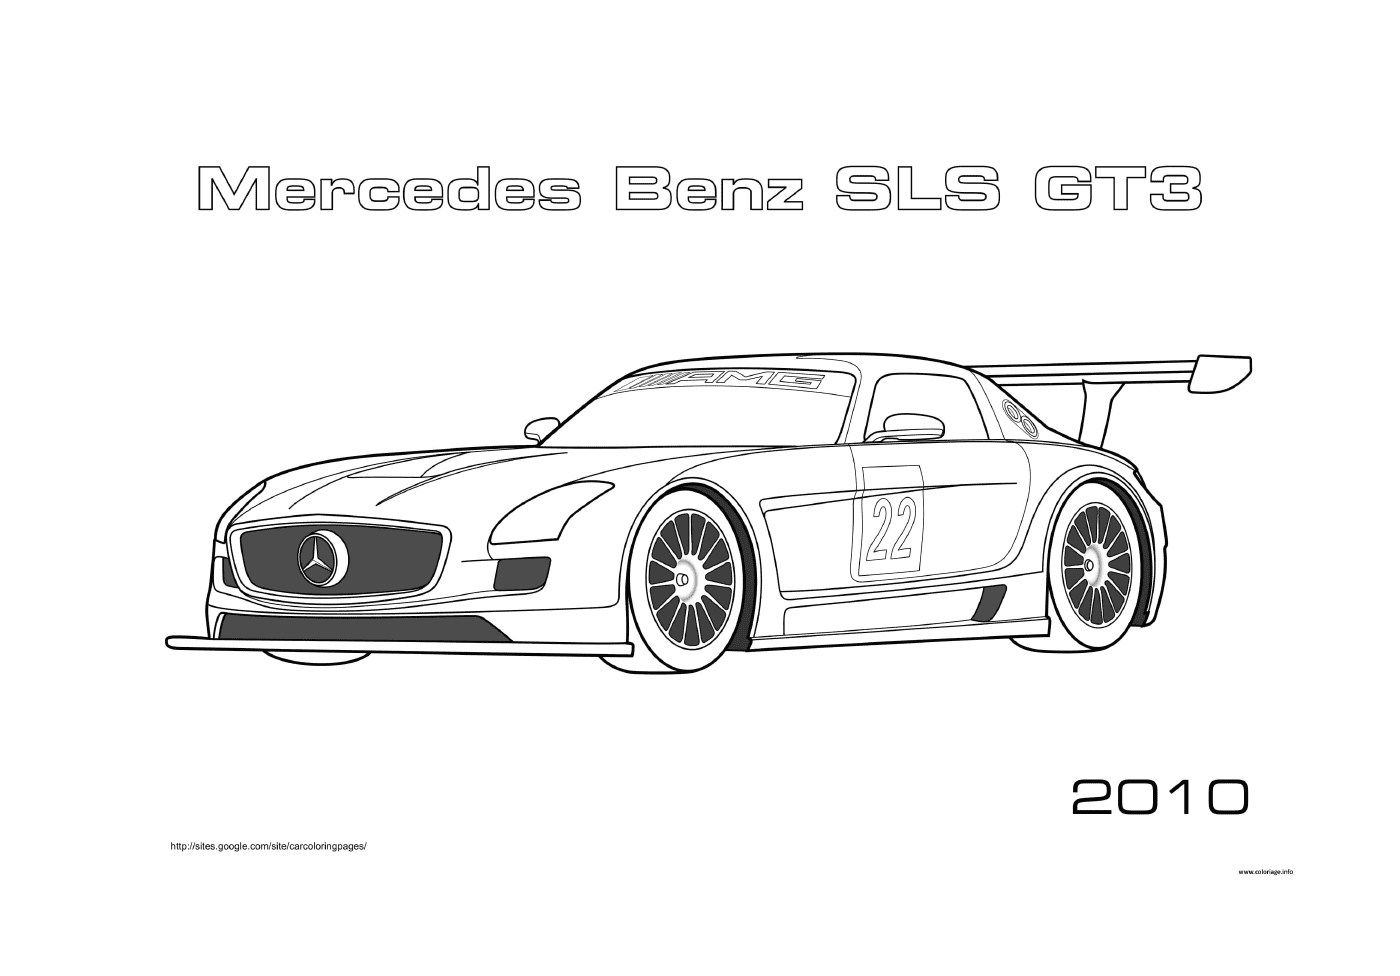  Mercedes-Benz SLS GT3 racing car 